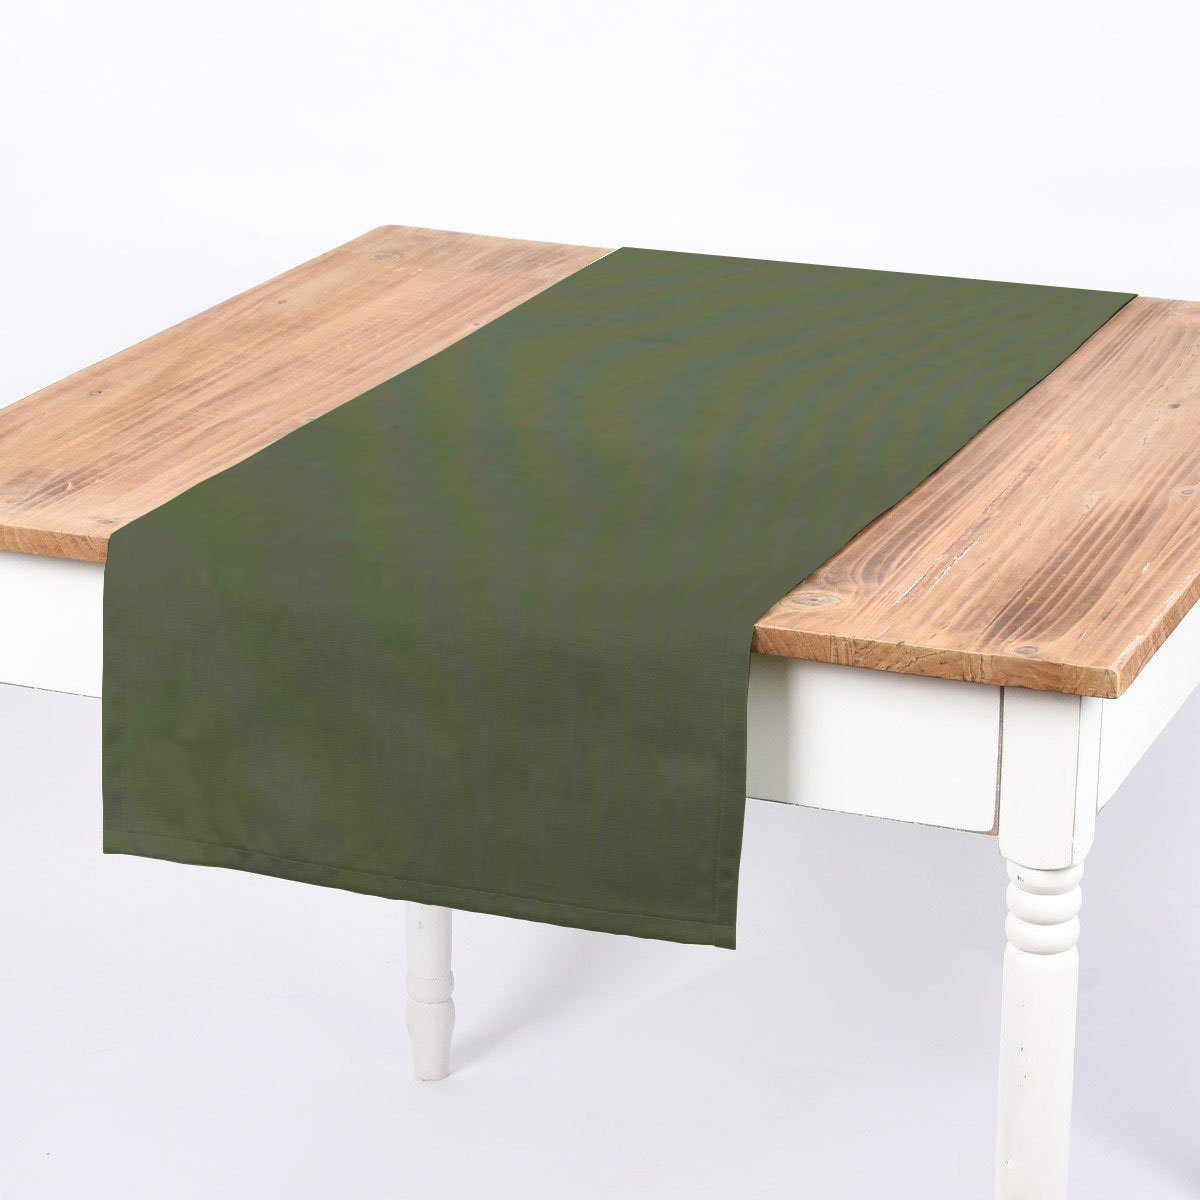 handmade einfarbig SCHÖNER LEBEN., SCHÖNER von aus Tischläufer grün Canvas 40x160cm Tischläufer LEBEN. oliv